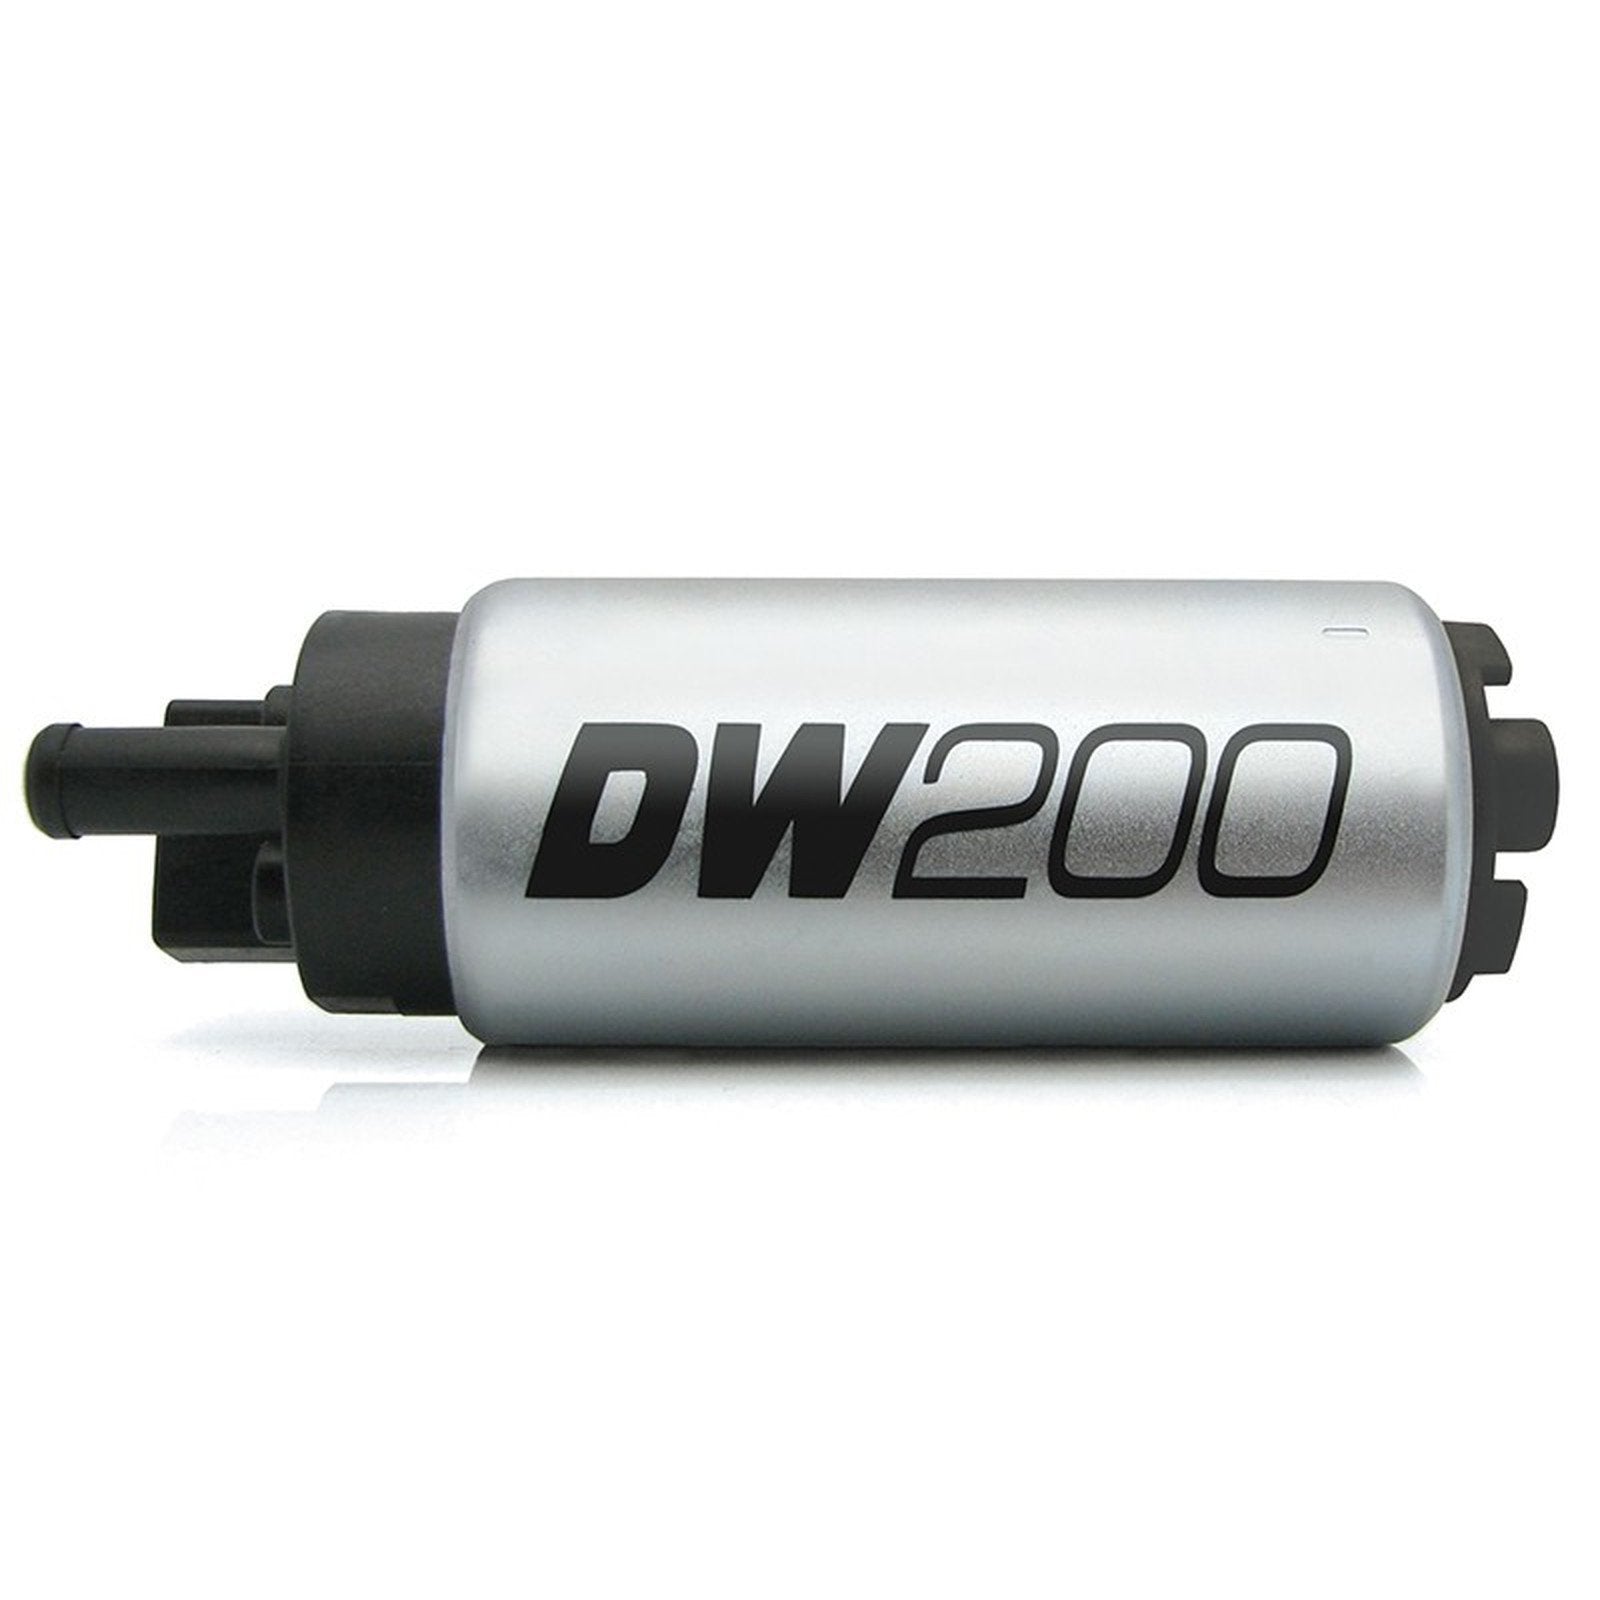 DEATSCHWERKS internal fuel pump DW200 universal 255 liters/hour - PARTS33 GmbH